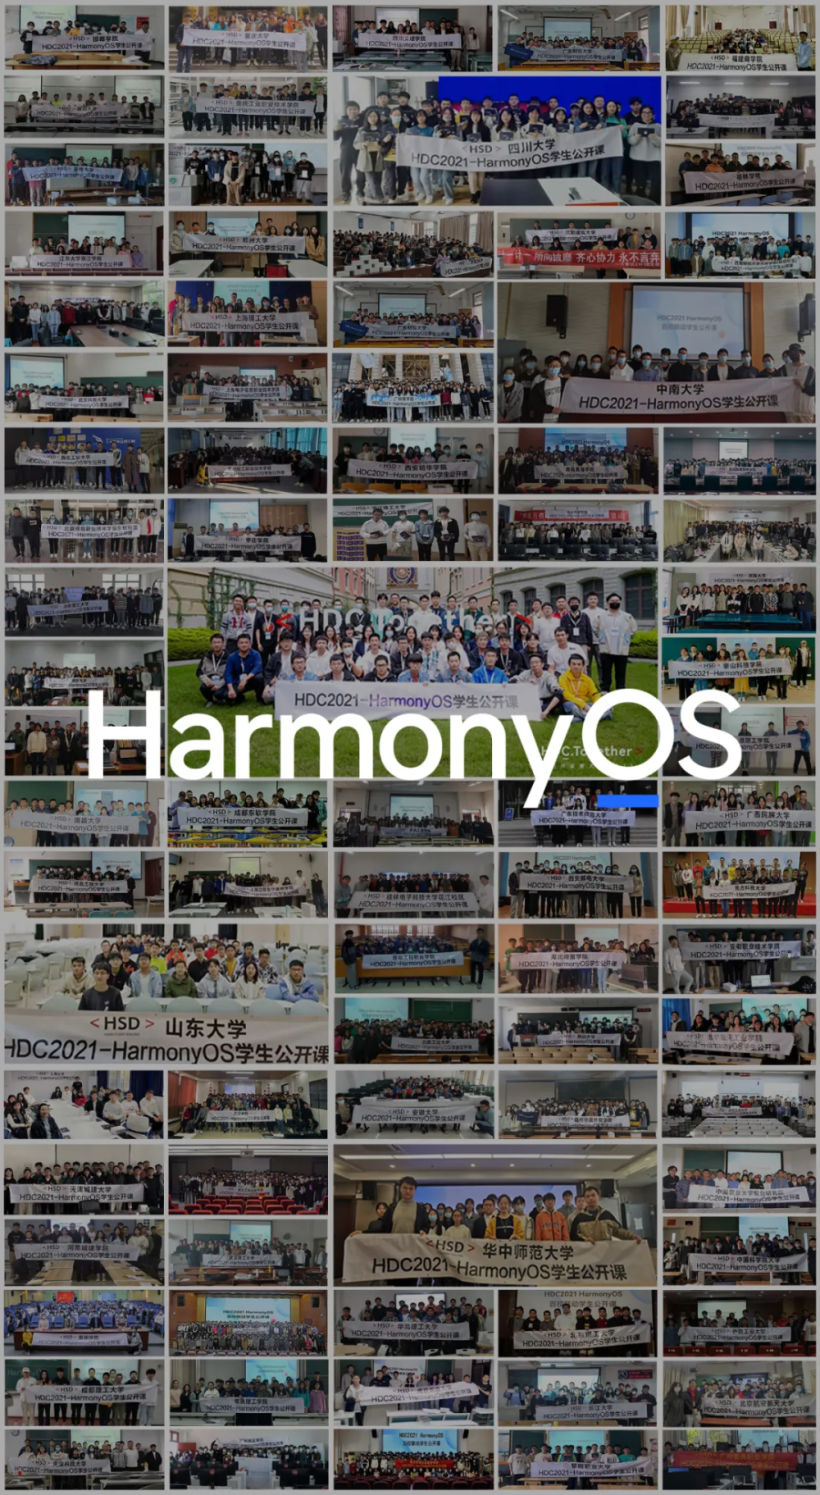 百校联动 HDC2021HarmonyOS 学生公开课成功开讲-鸿蒙开发者社区